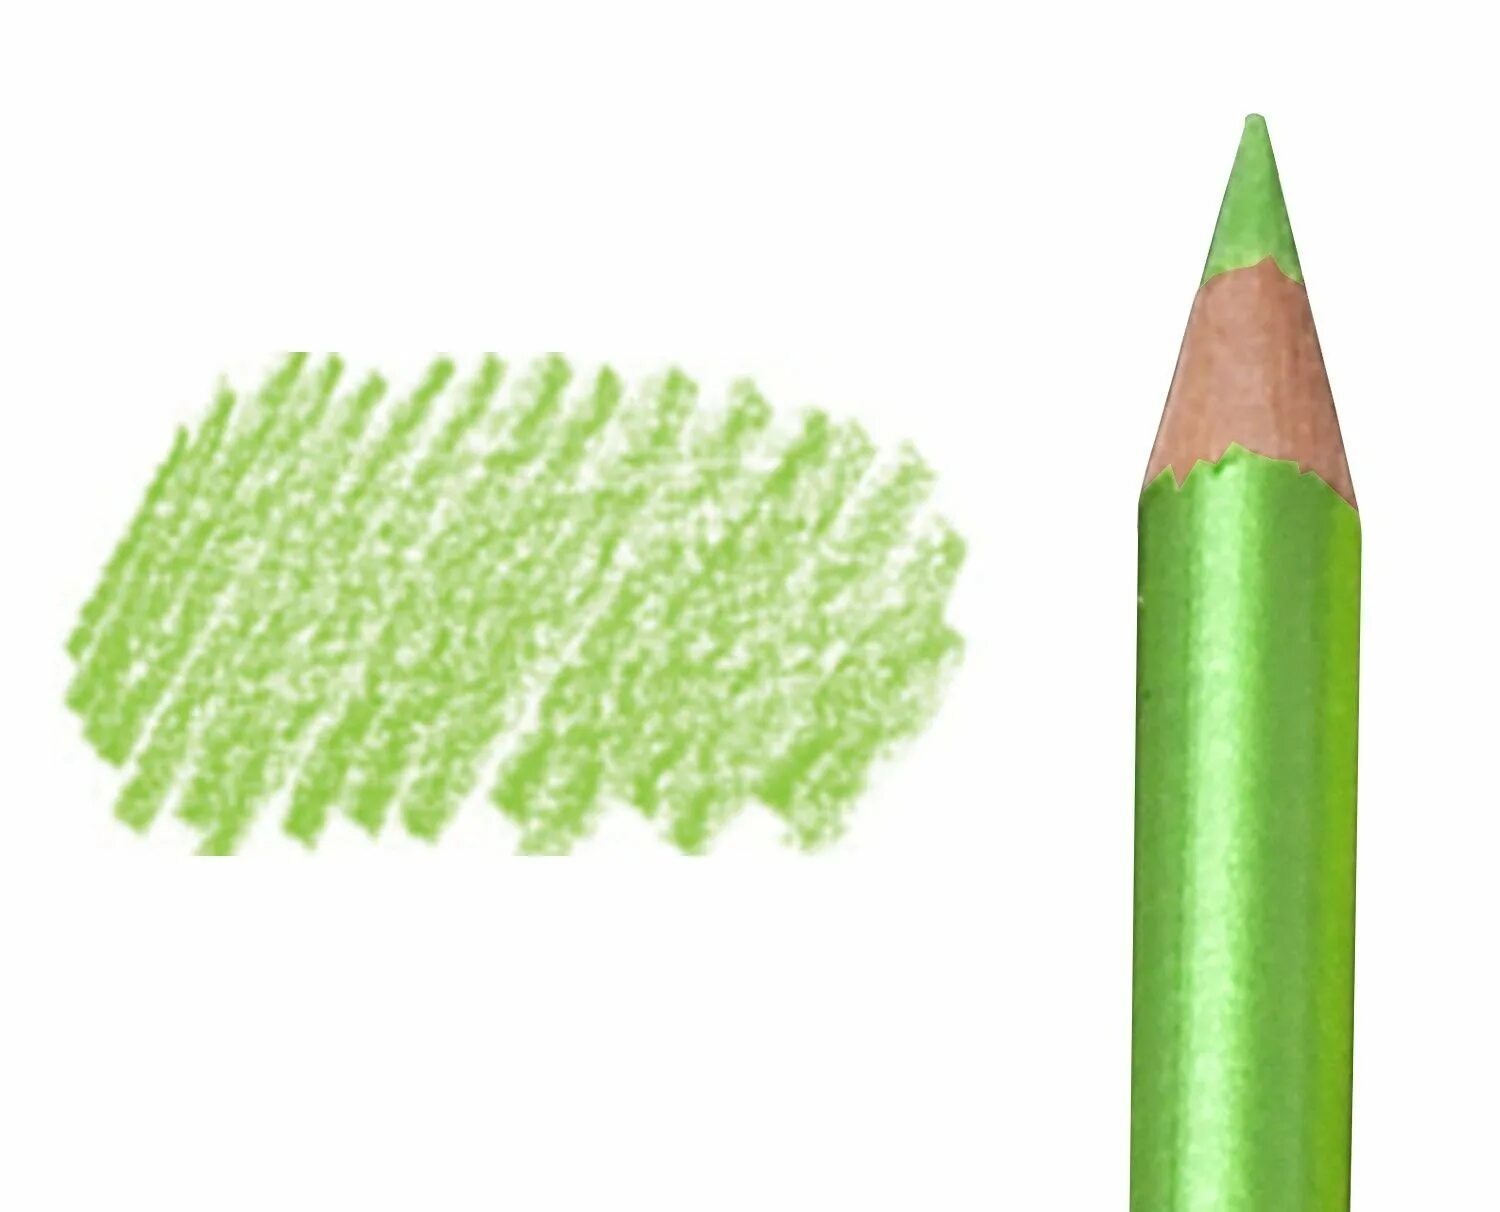 Купить зеленый карандаш. Зеленый карандаш. Зеленый карандаш для рисования. Салатовый карандаш для глаз. Салатовый цвет карандаша.